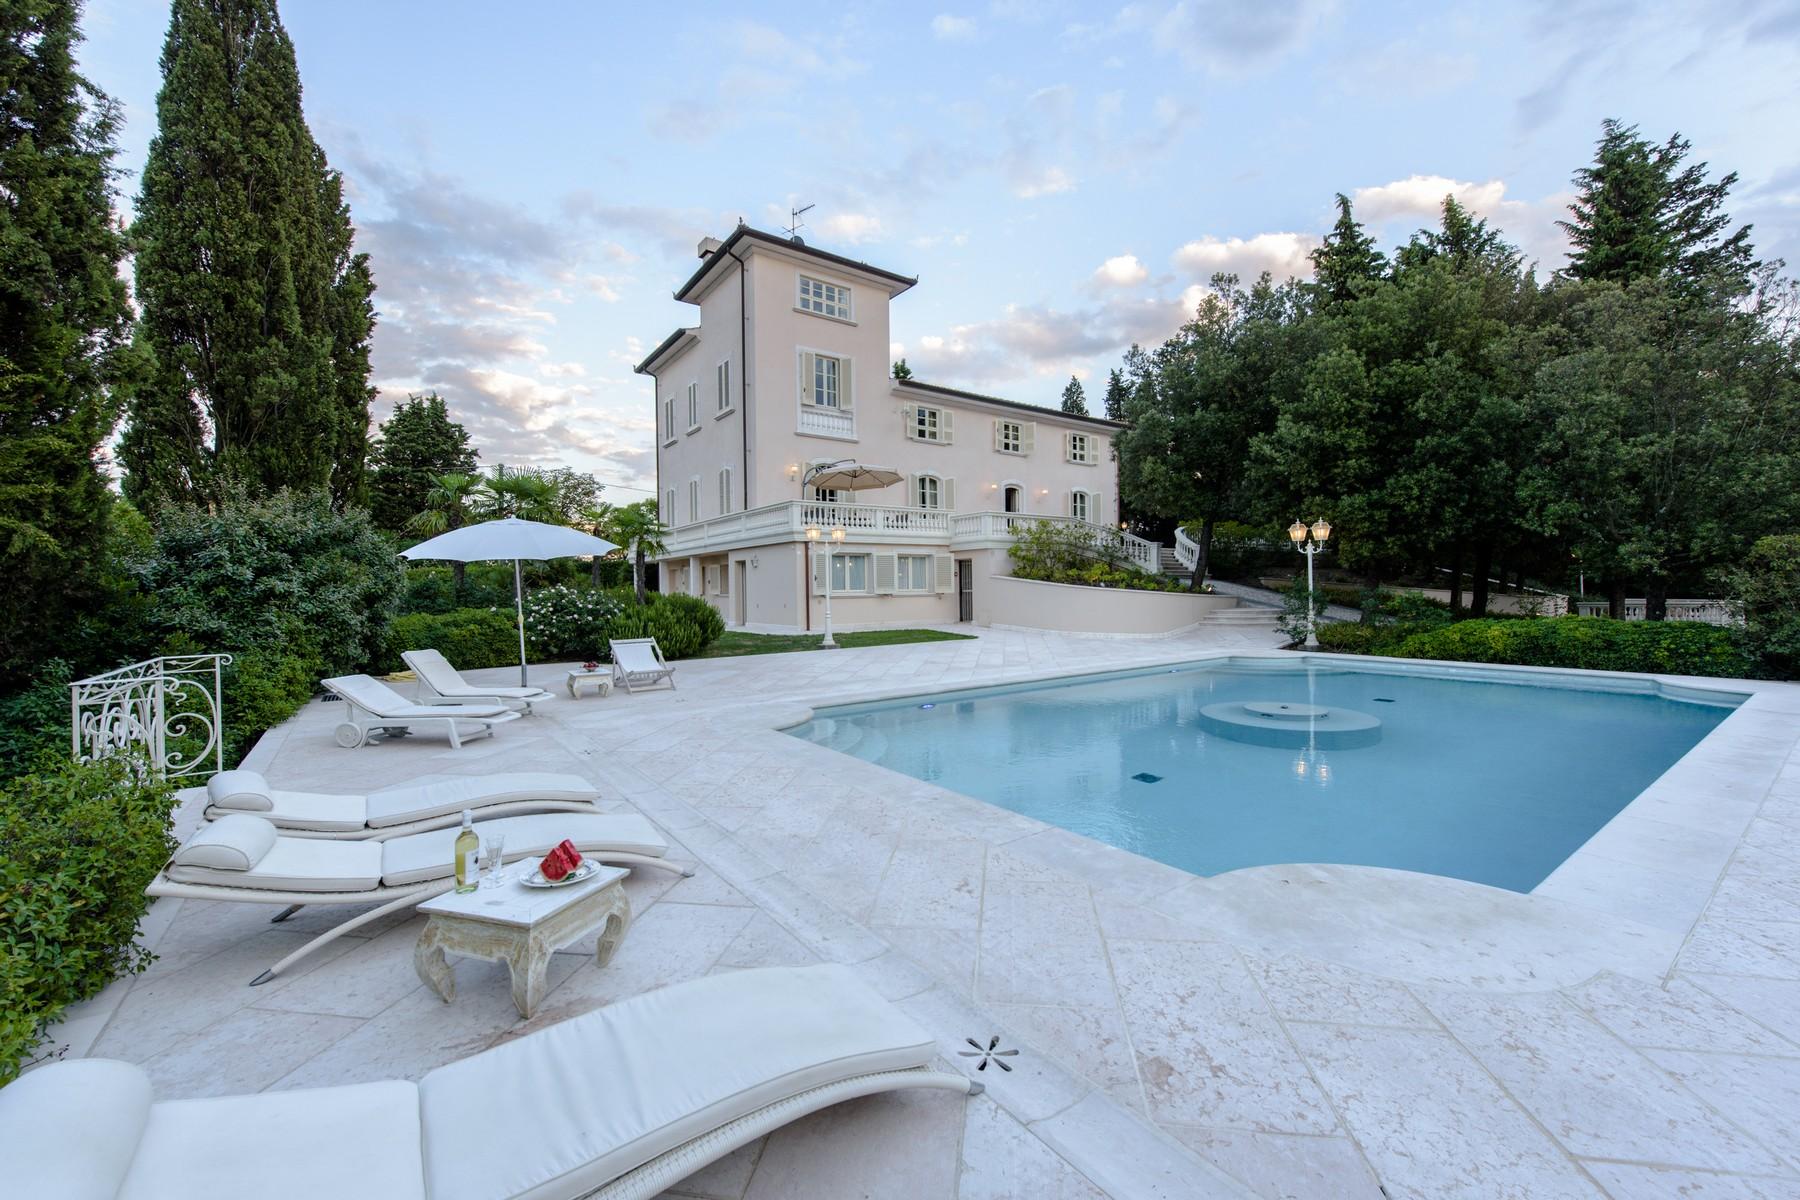 Превосходная флорентийская вилла с бассейном и парком на холмах Кьянти, Италия - 1